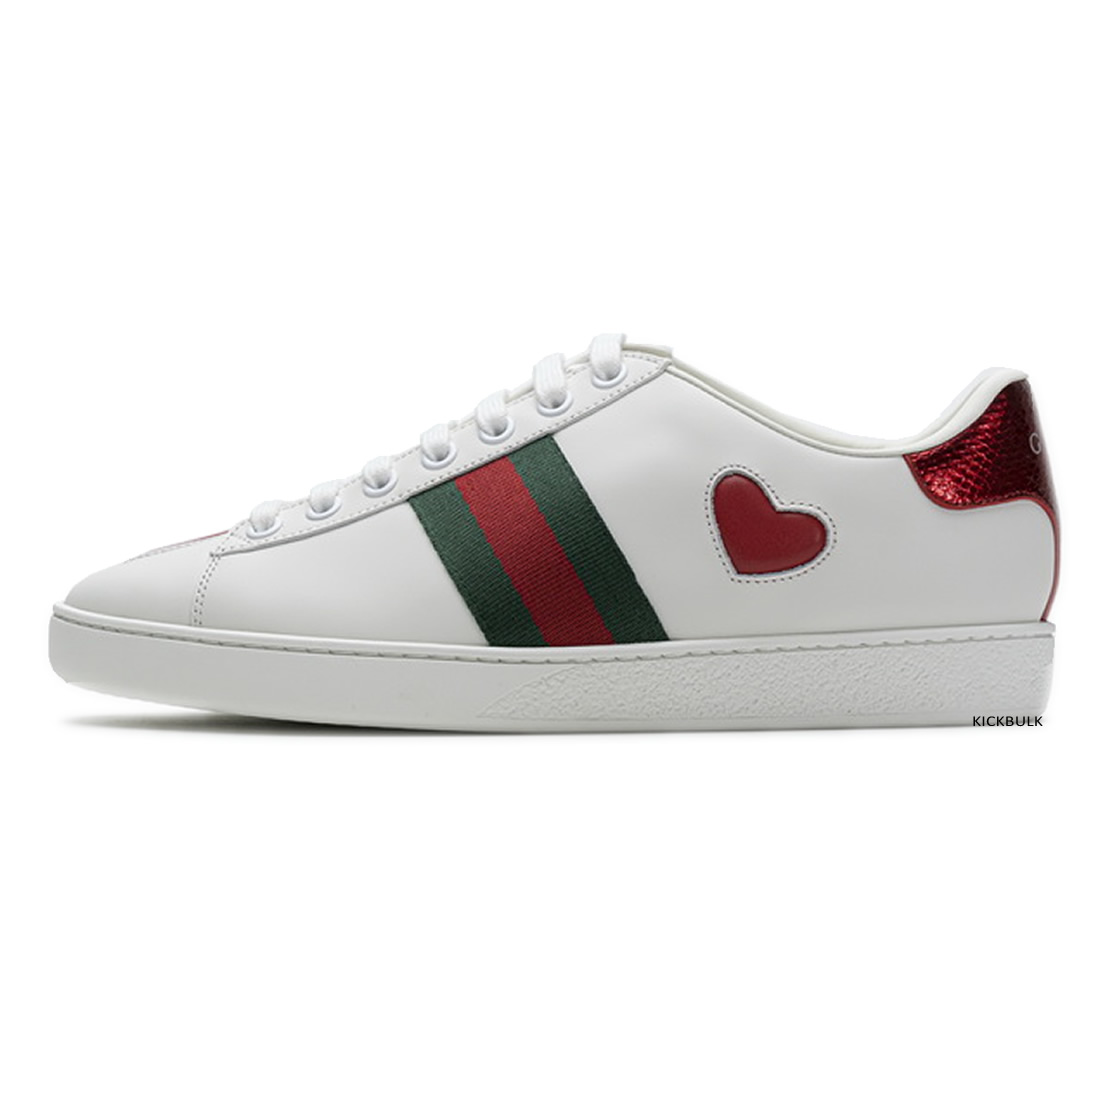 Gucci Love Sneakers 429446a39gq9085 1 - www.kickbulk.org